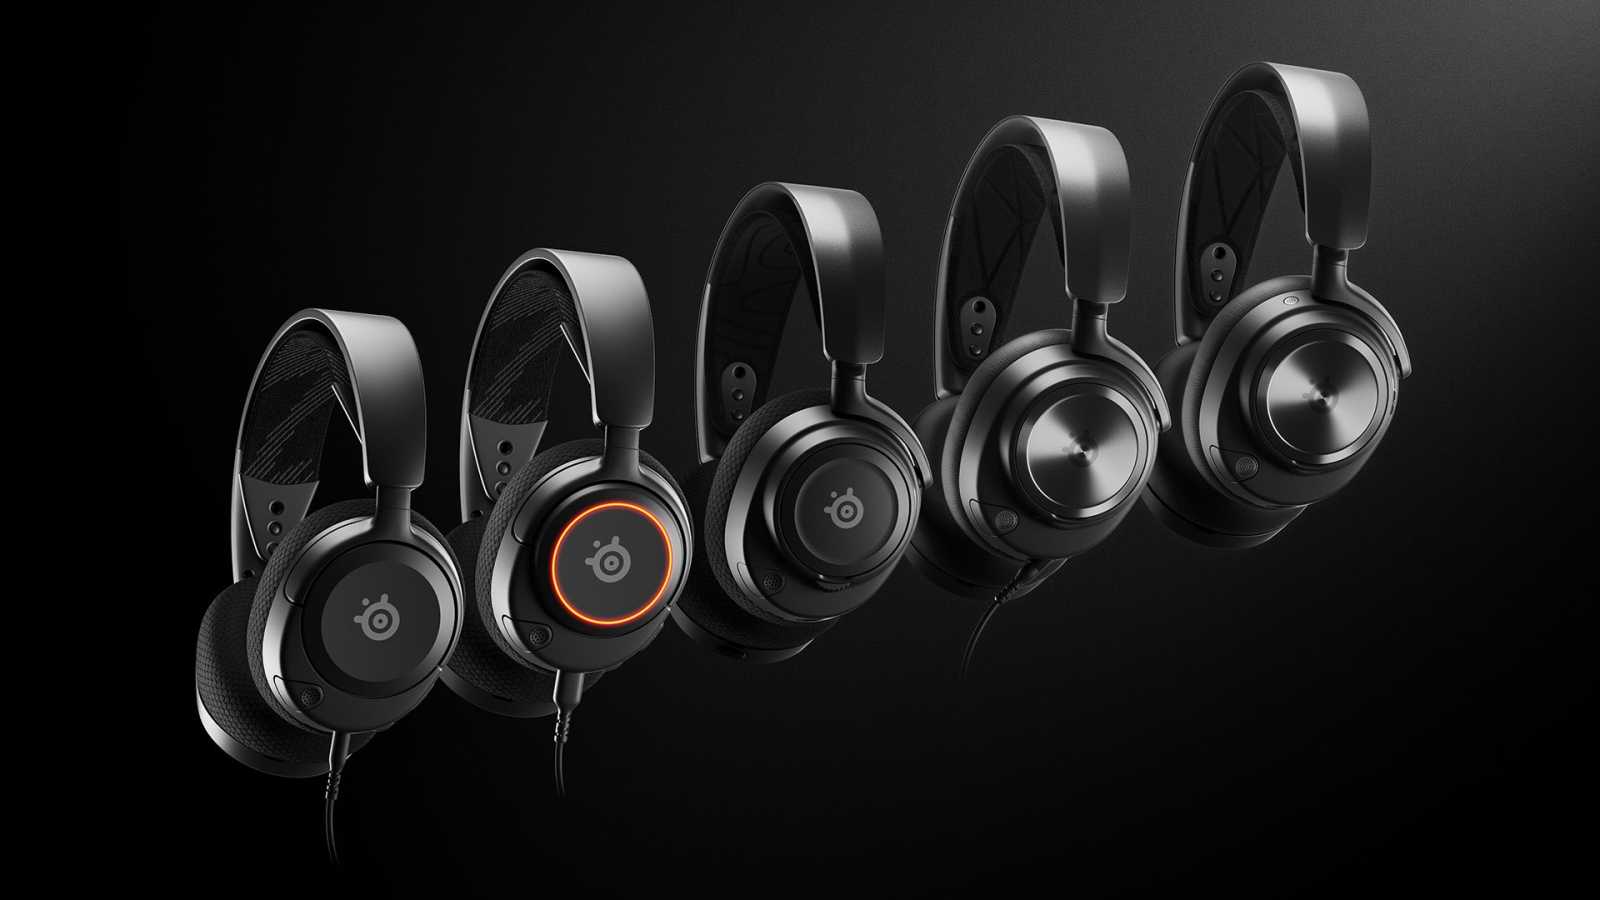 SteelSeries představuje nová sluchátka Acrtis Nova 7, 3 a 1 s novým designem i funkcemi